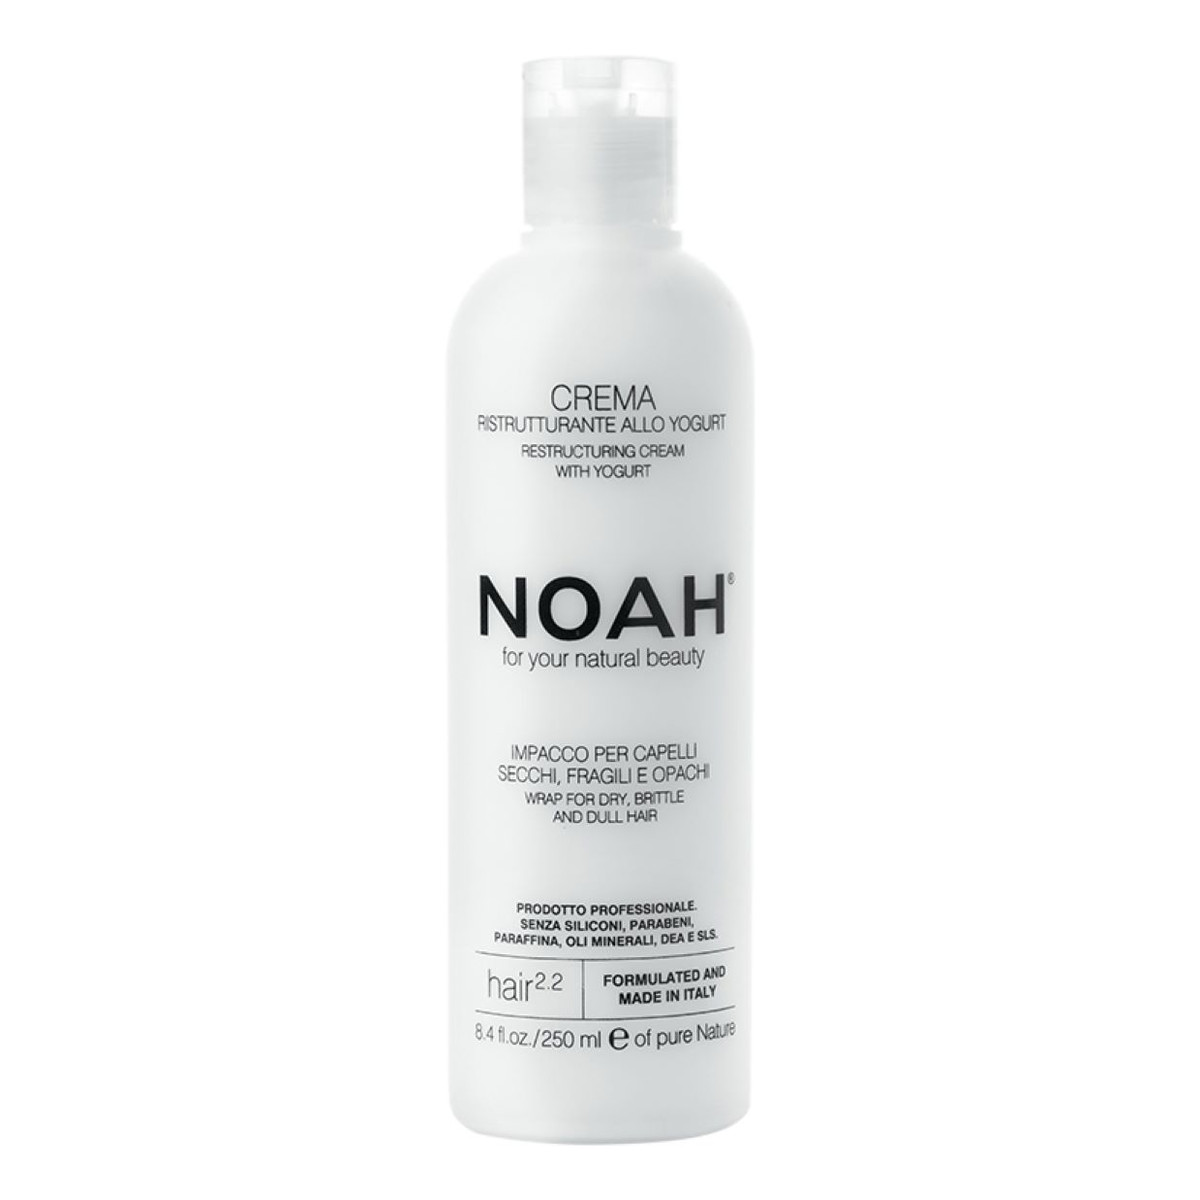 Noah For Your Natural Beauty Restructuring Cream Hair 2.2 Krem restrukturyzacyjny do włosów Yogurt 250ml